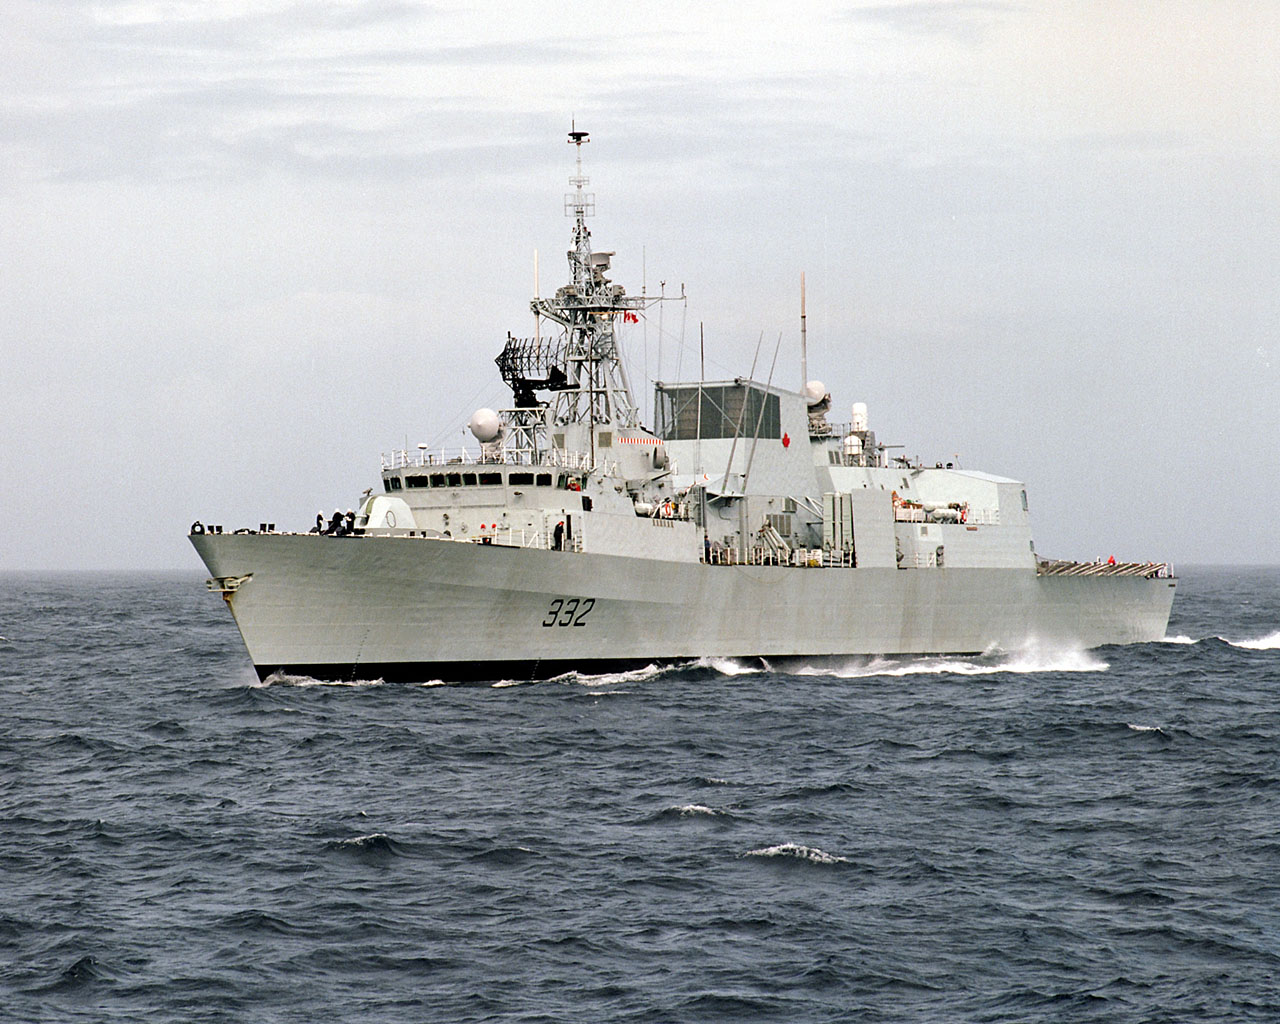 HMCS Ville de Quebec a jewel of the navy crown